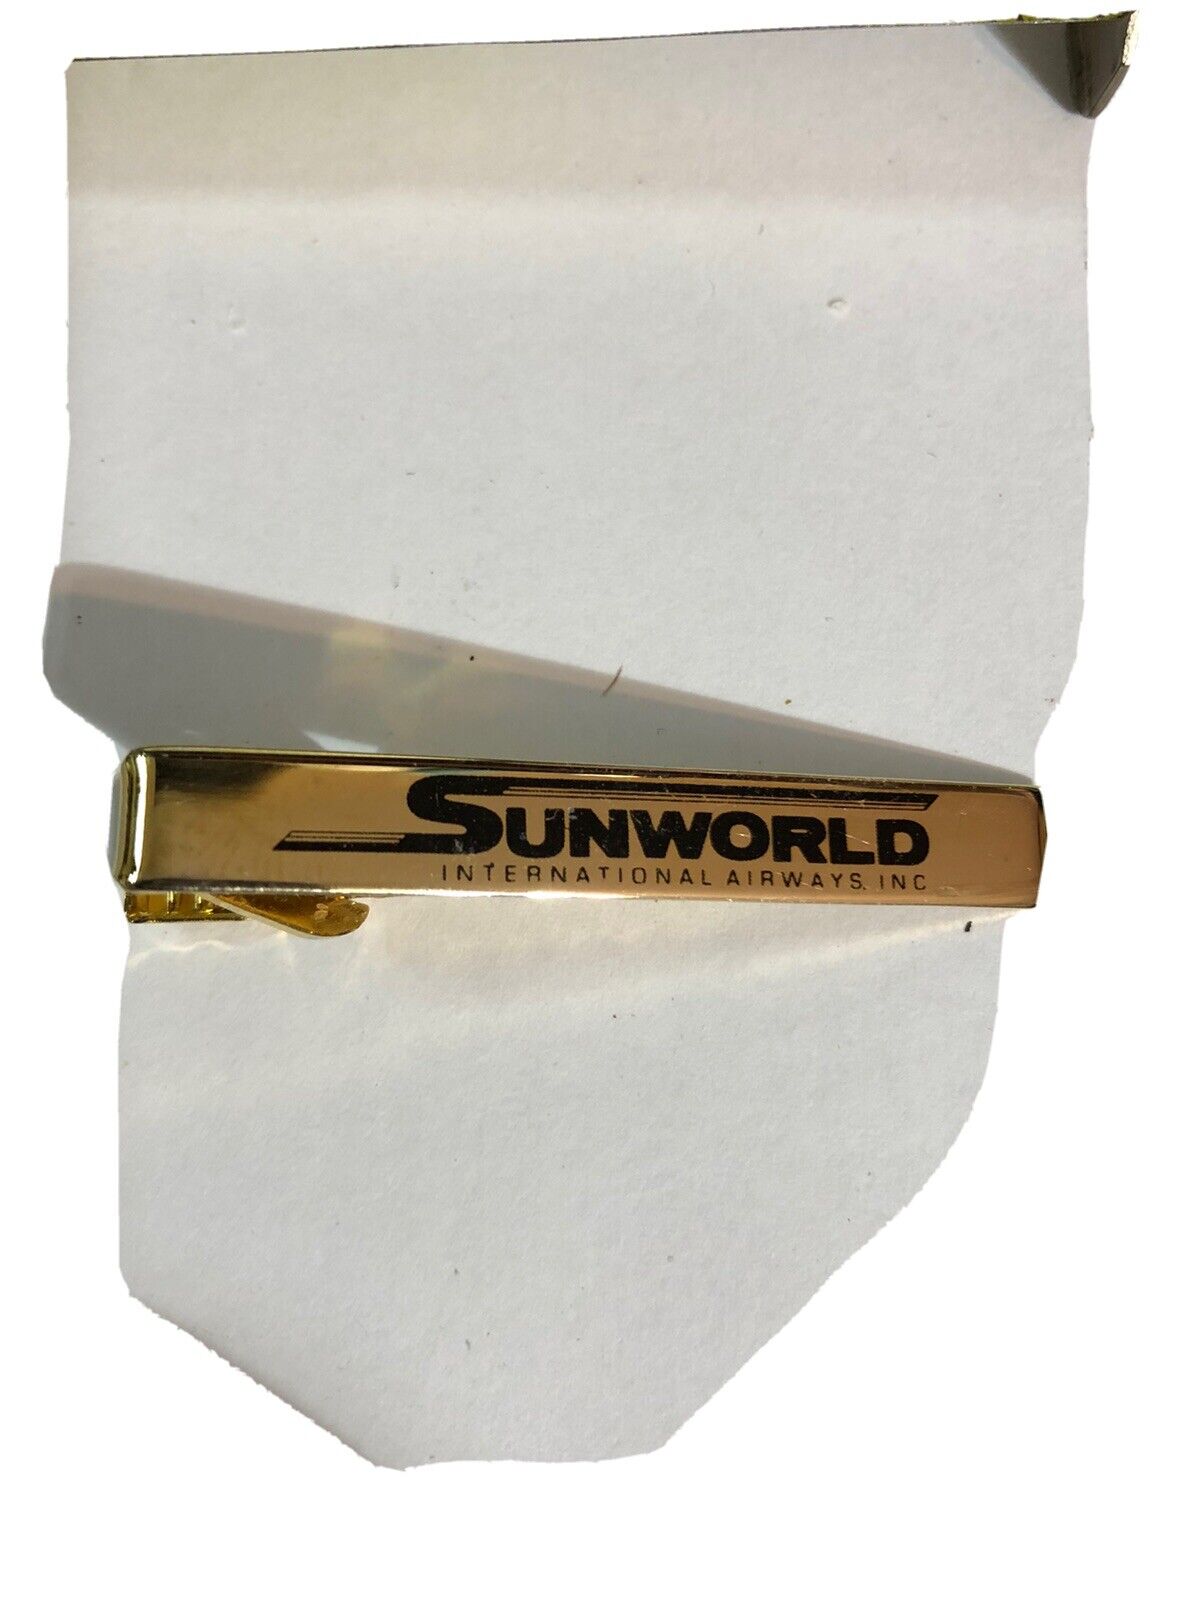 Vintage Sunworld Airlines Tie Pin